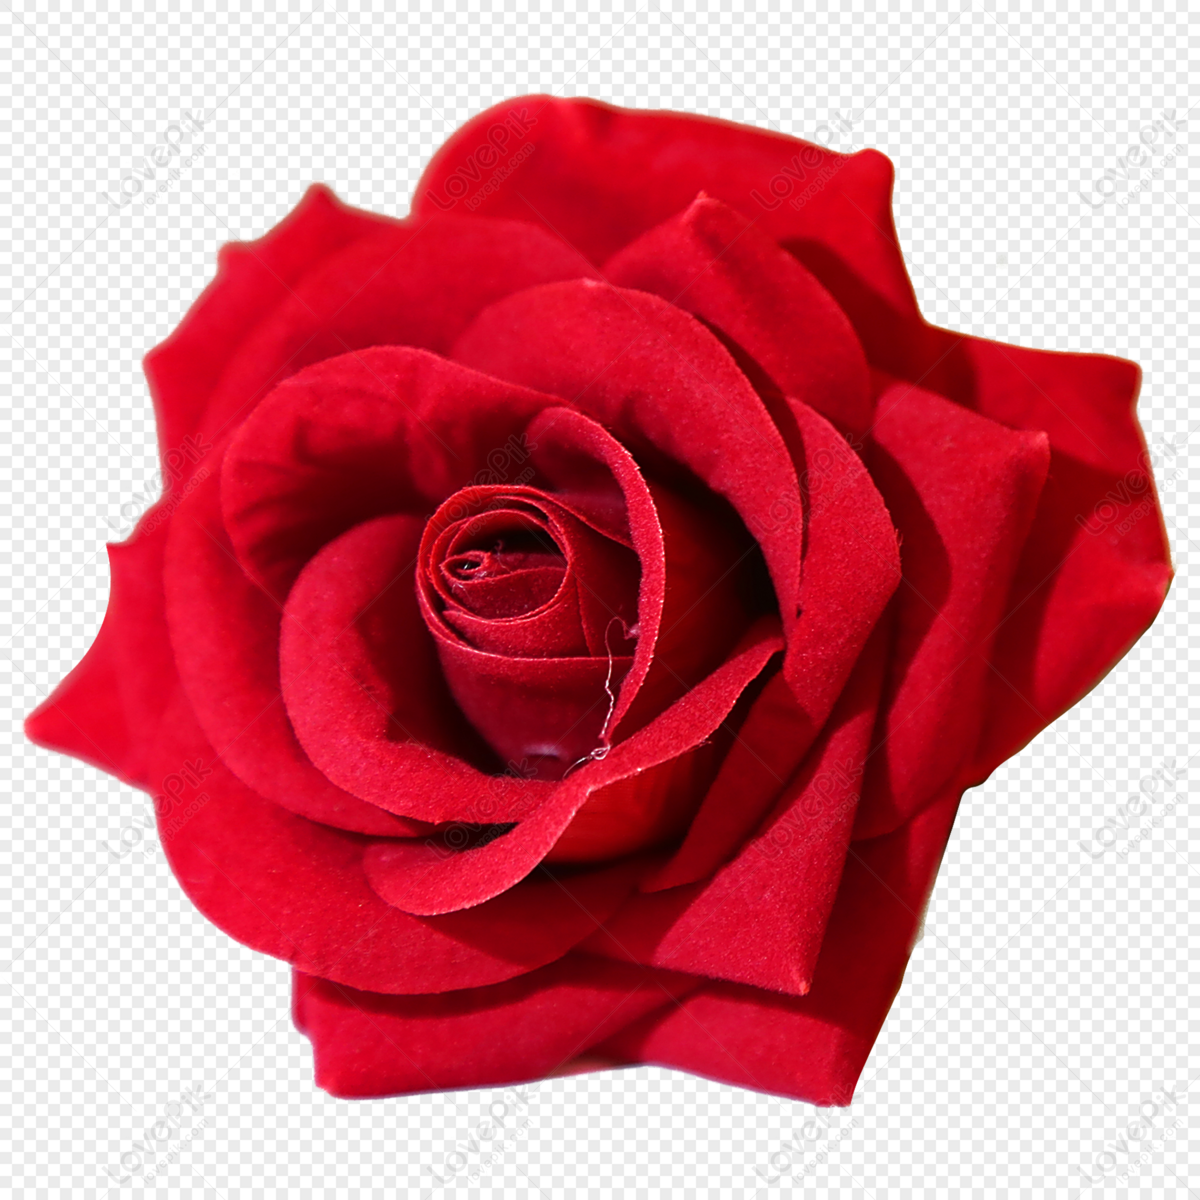 Hoa hồng là biểu tượng cho tình yêu lãng mạn, vẻ đẹp kiêu sa và quyến rũ. Hãy chiêm ngưỡng những bông hoa hồng cực kỳ tinh xảo, với những màu sắc tươi sáng và hương thơm đặc trưng được thu hút bởi những người yêu thích sự lãng mạn và quyến rũ.